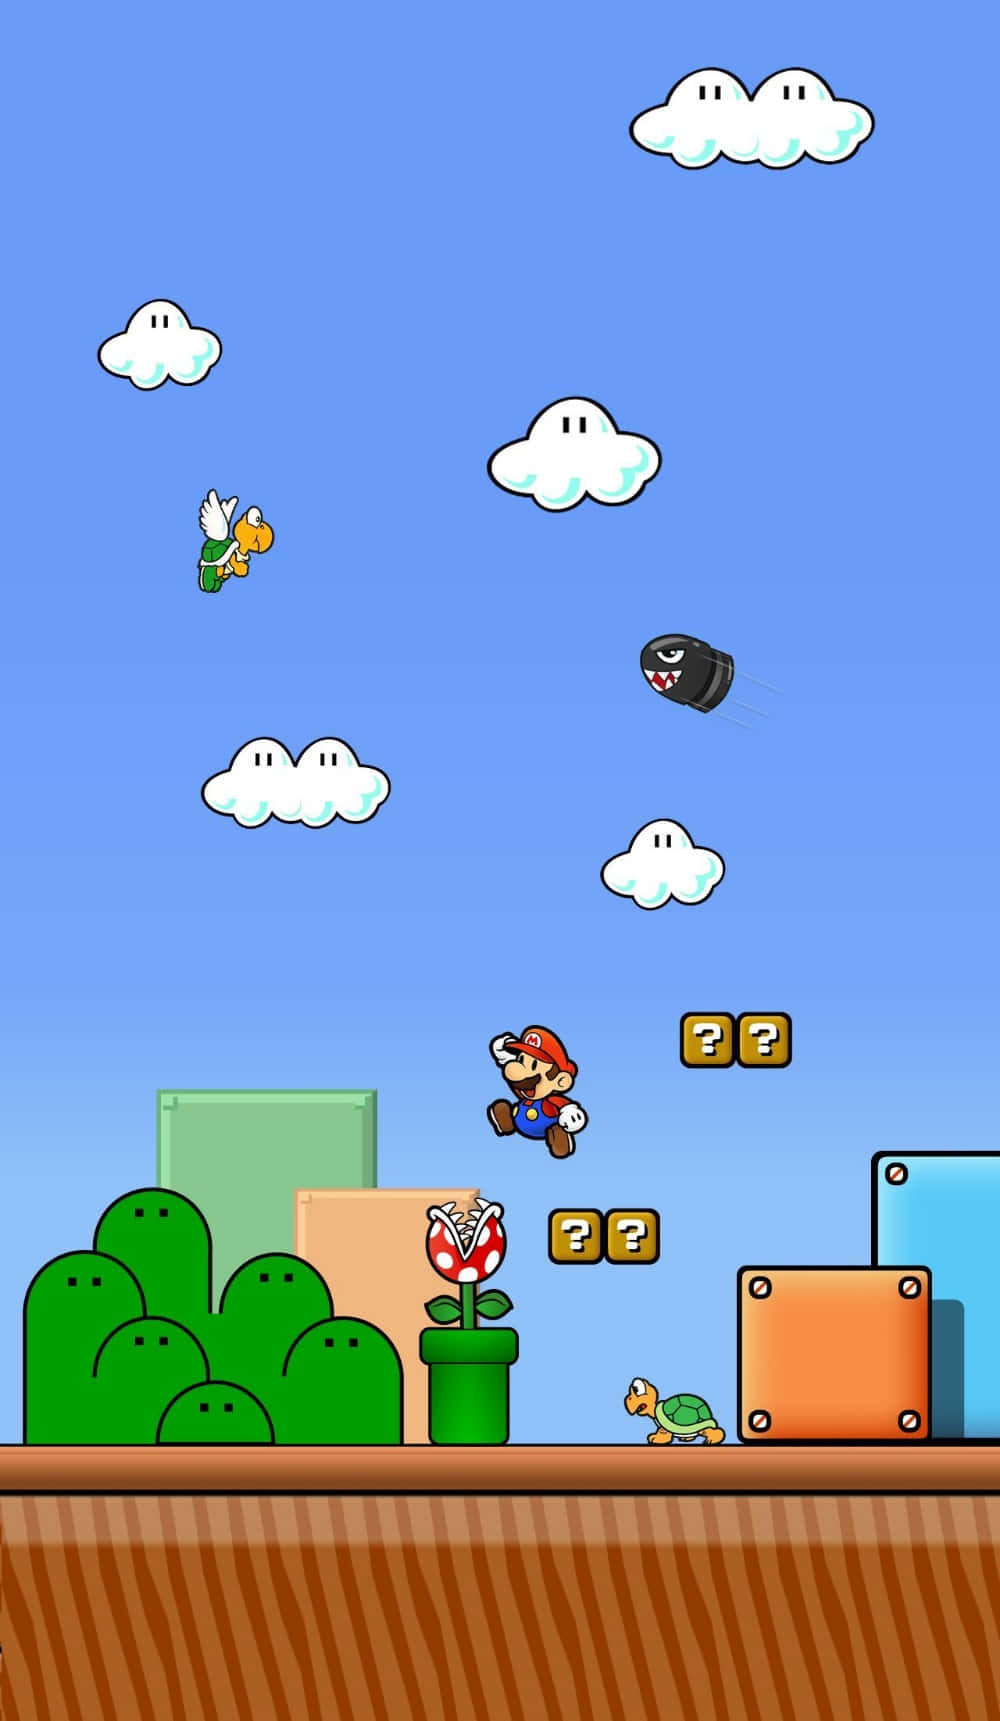 Super Mario and Luigi soaring through a classic Super Mario Bros 3 level Wallpaper